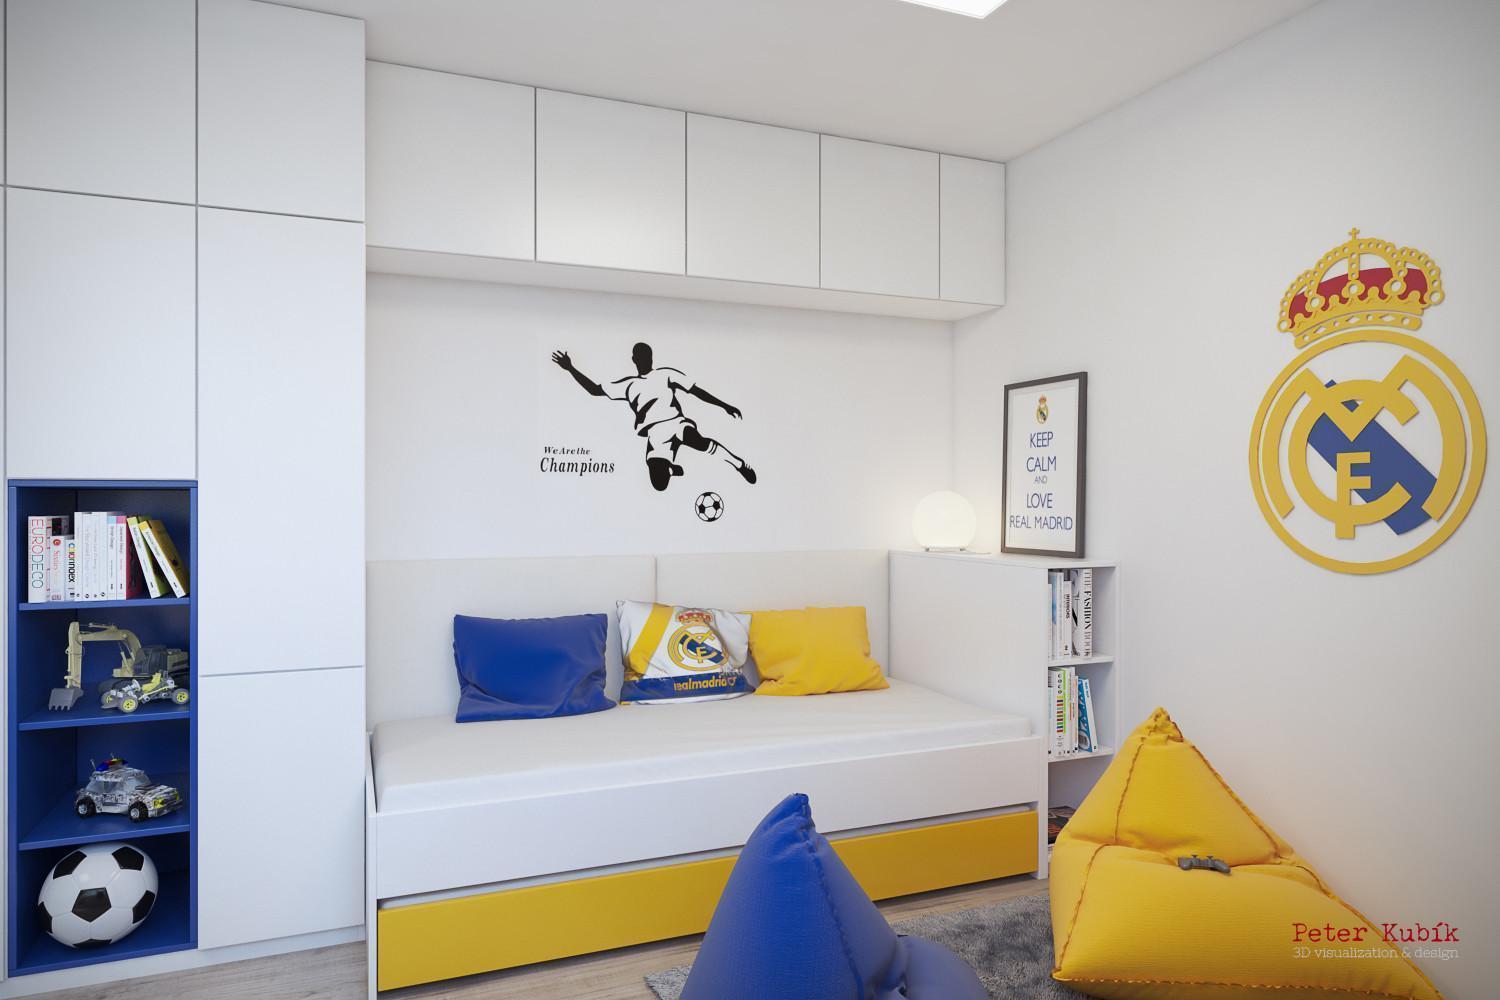 Biela študentská izba so žltými a modrými akcentami